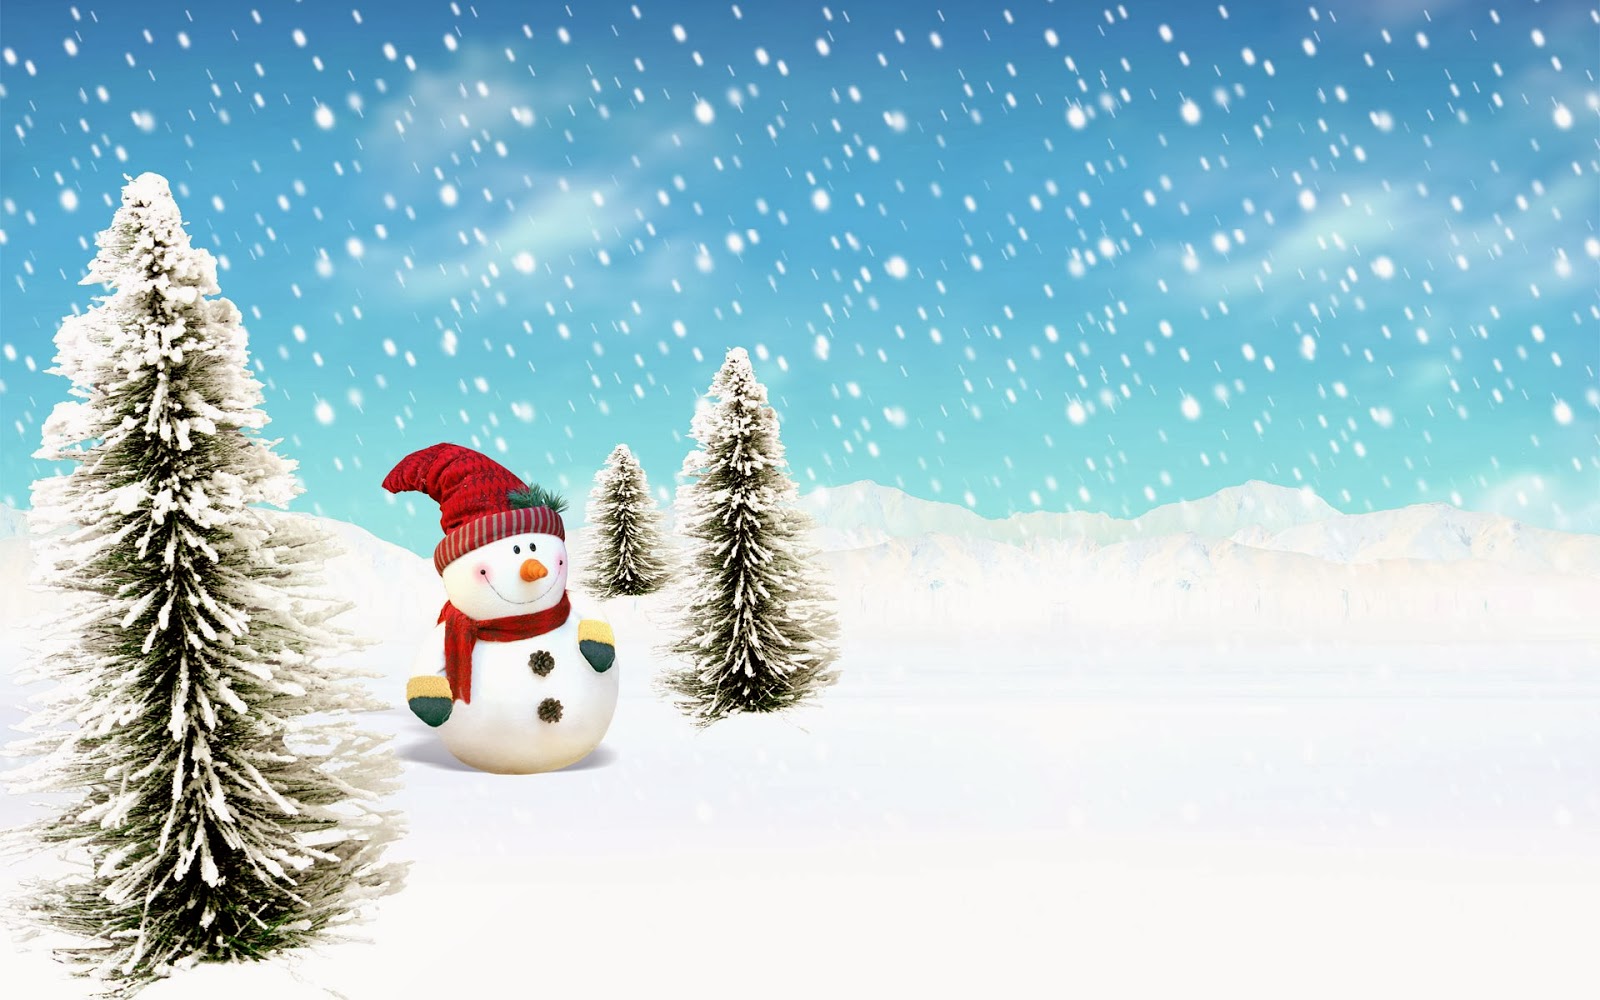 크리스마스 배경 벽지,겨울,눈,나무,서리,눈사람